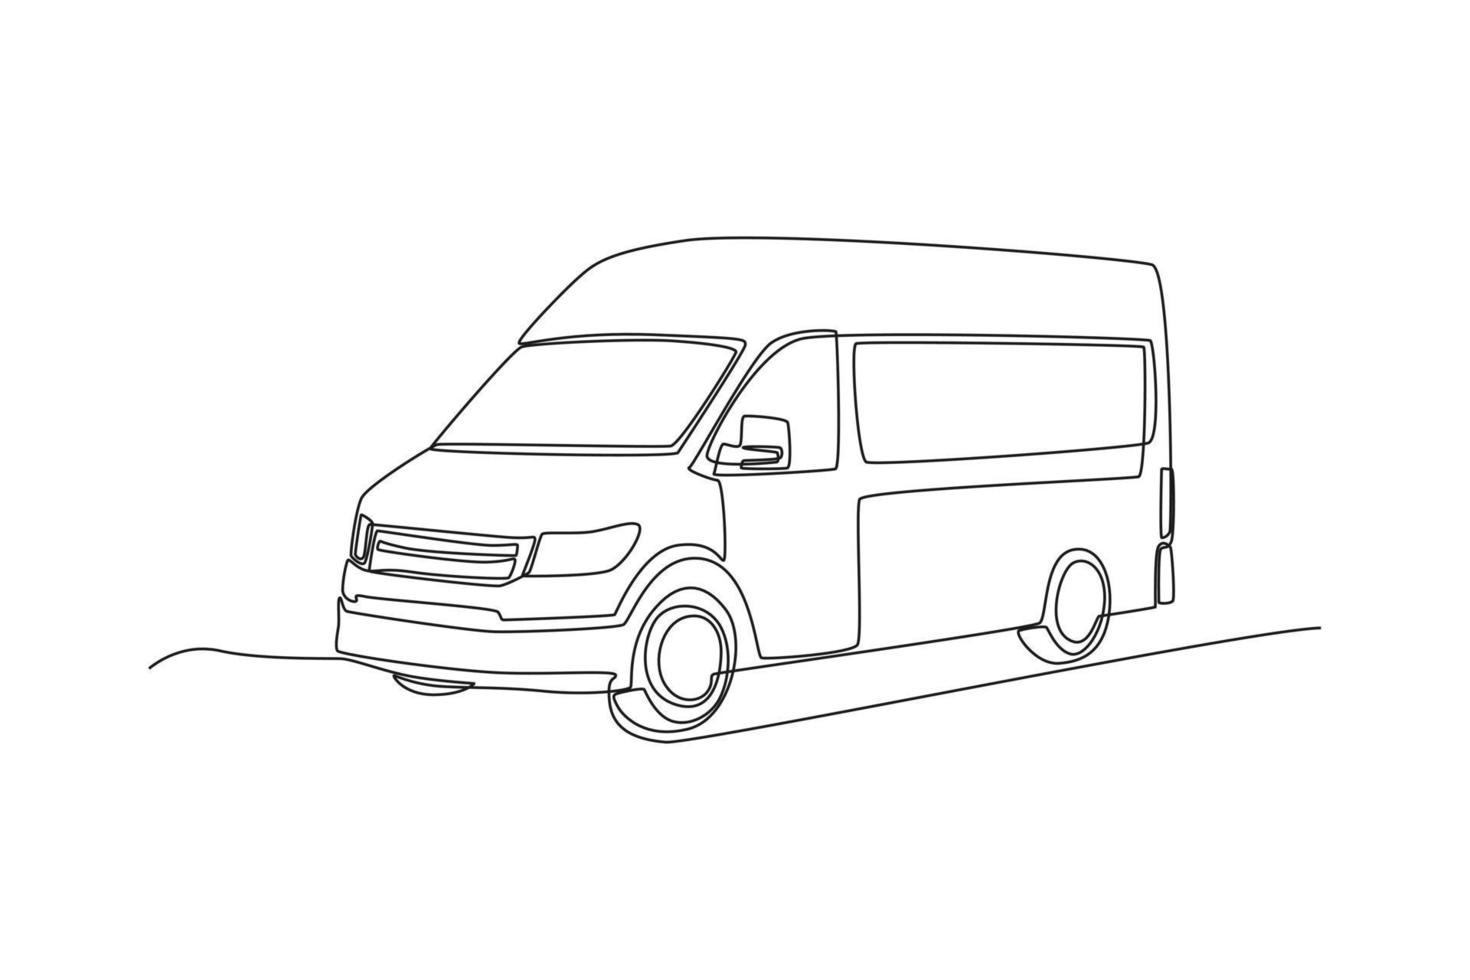 furgoneta de reparto de dibujo de una sola línea. concepto de vehículo. ilustración de vector gráfico de diseño de dibujo de línea continua.